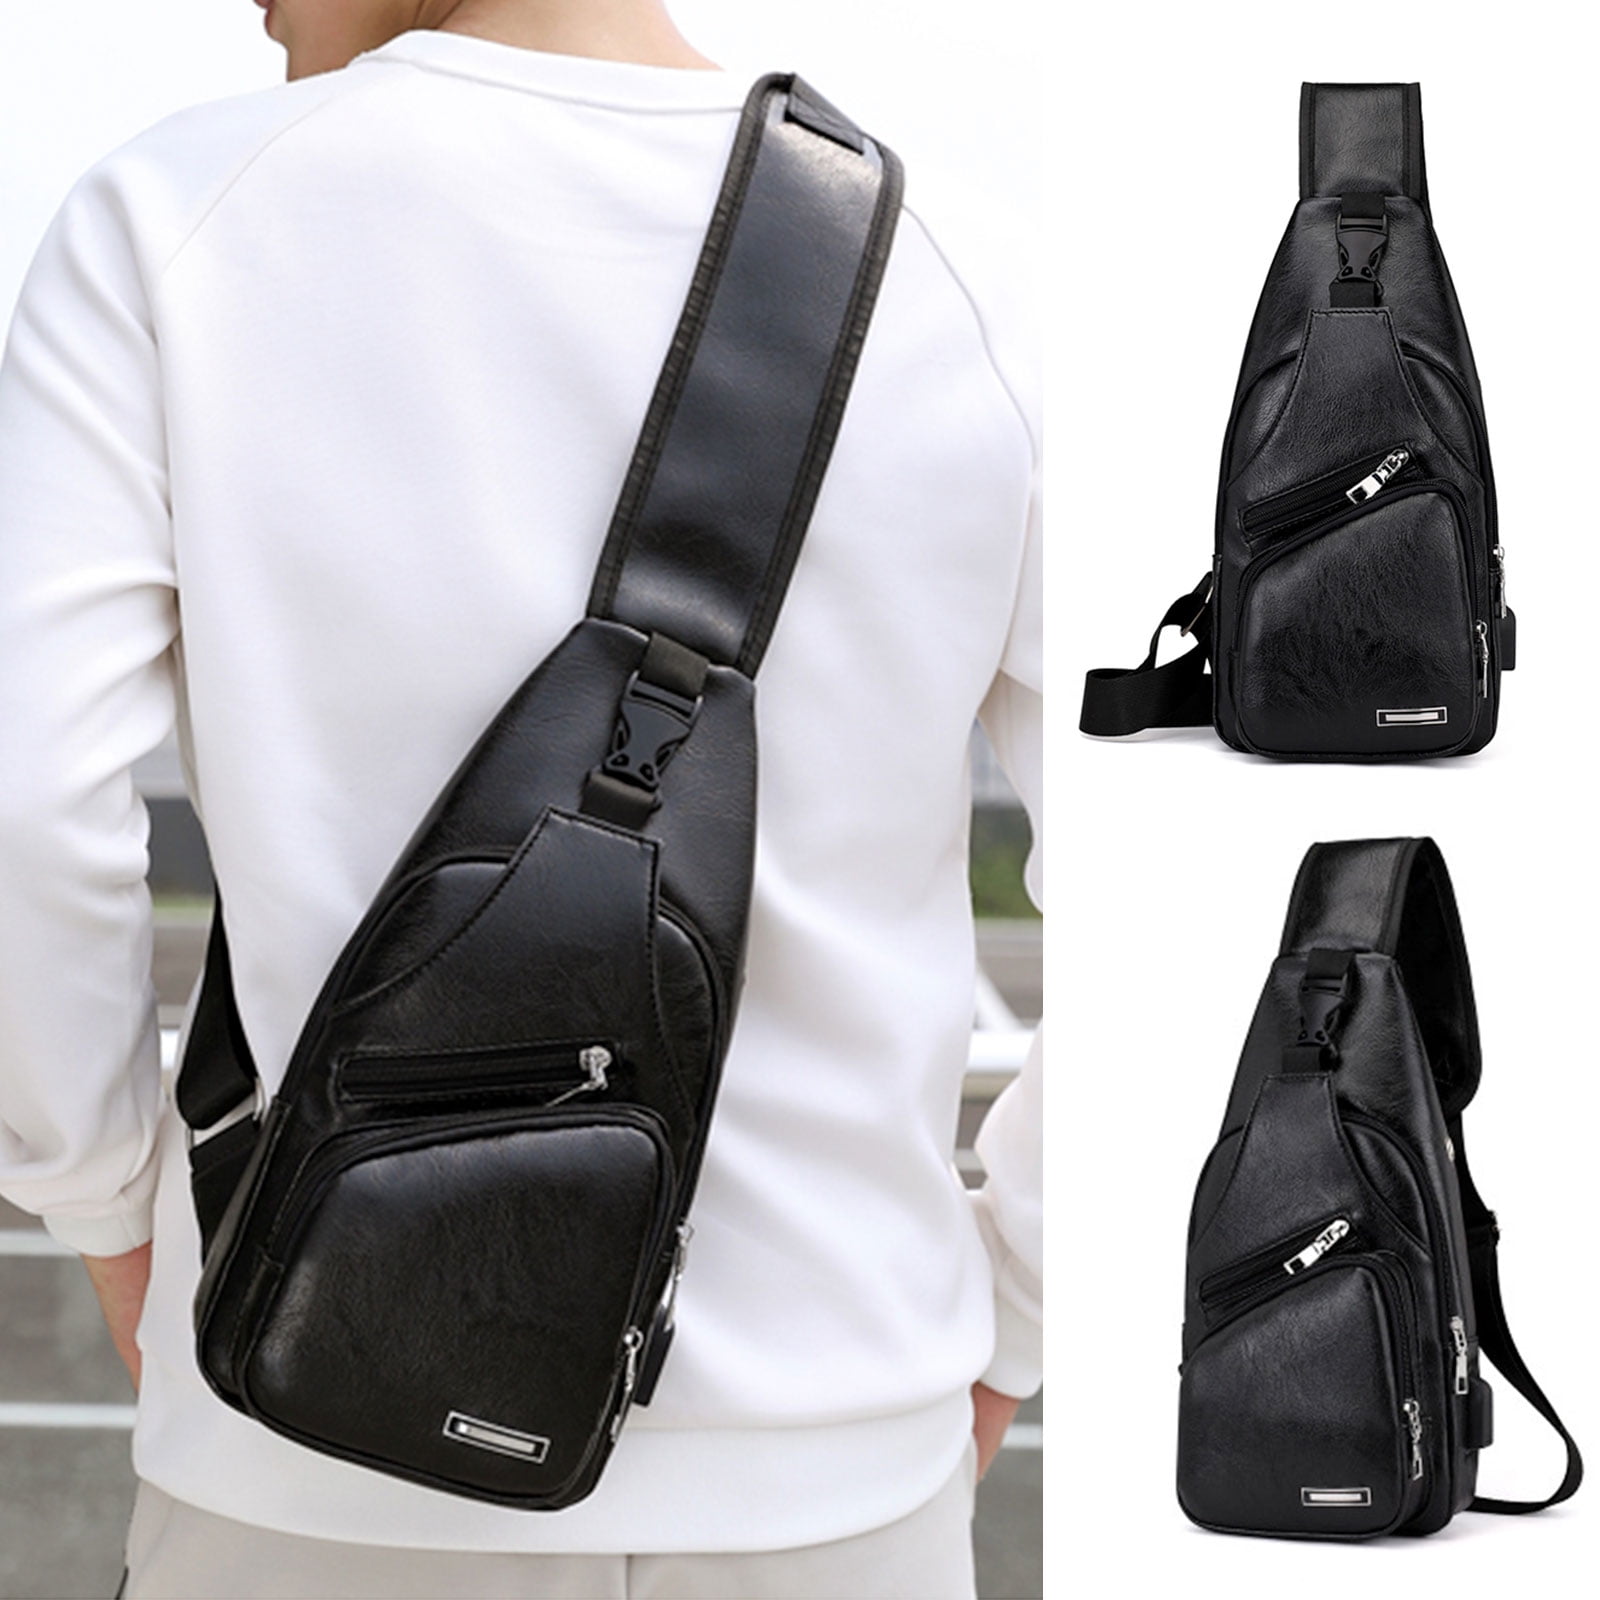 Leather Sling Bag for Men,Crossbody Purse Chest Bag Backpack Messenger Shoulder Bag Small